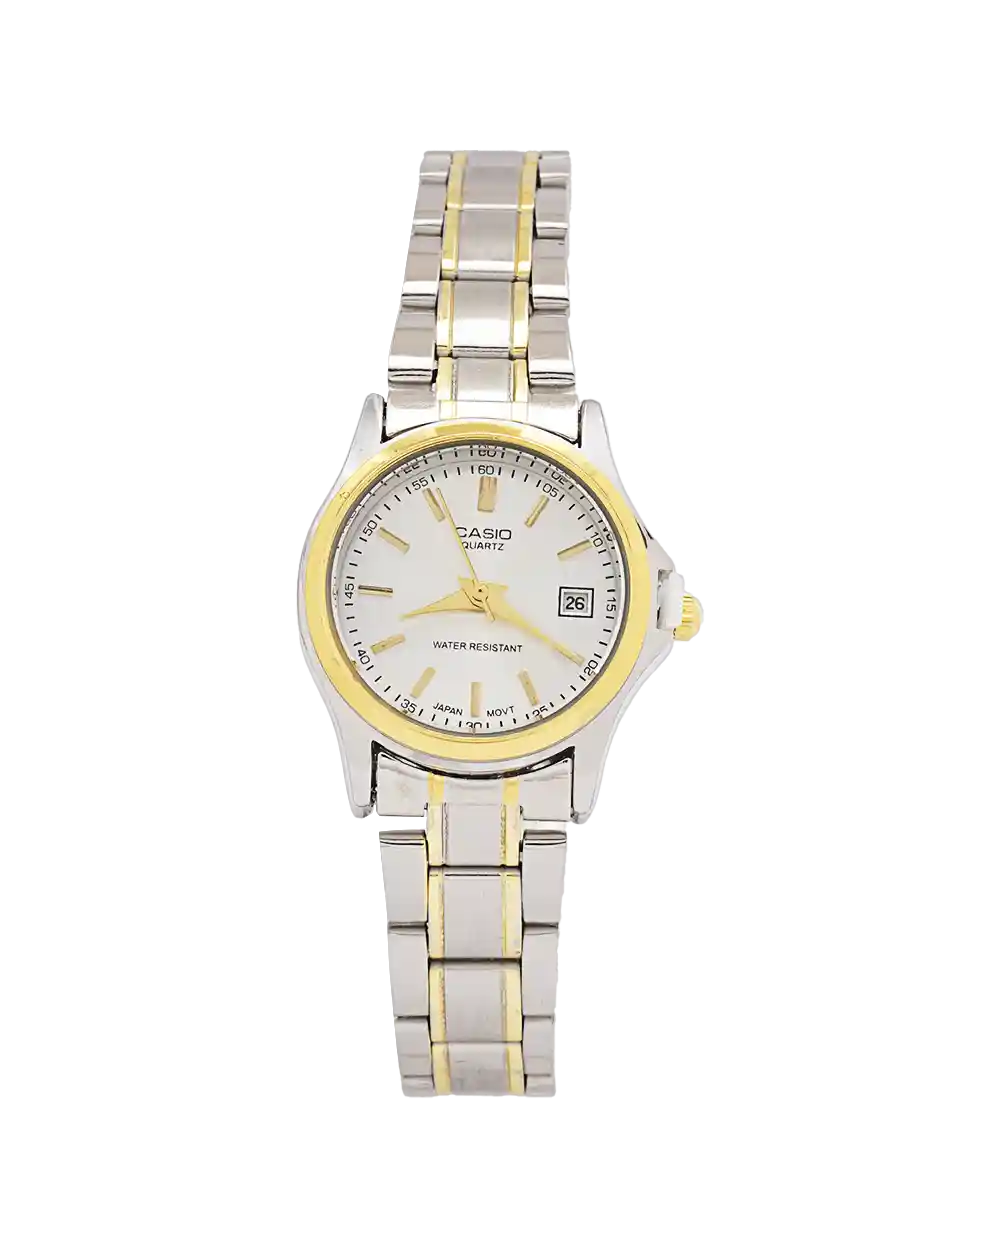 خرید ساعت مچی زنانه کاسیو CASIO مدل 1942 بند استیل نقره ای طلایی رنگ ثابت و صفحه مشکی، بهترین قیمت به همراه ارسال رایگان و جعبه کادویی